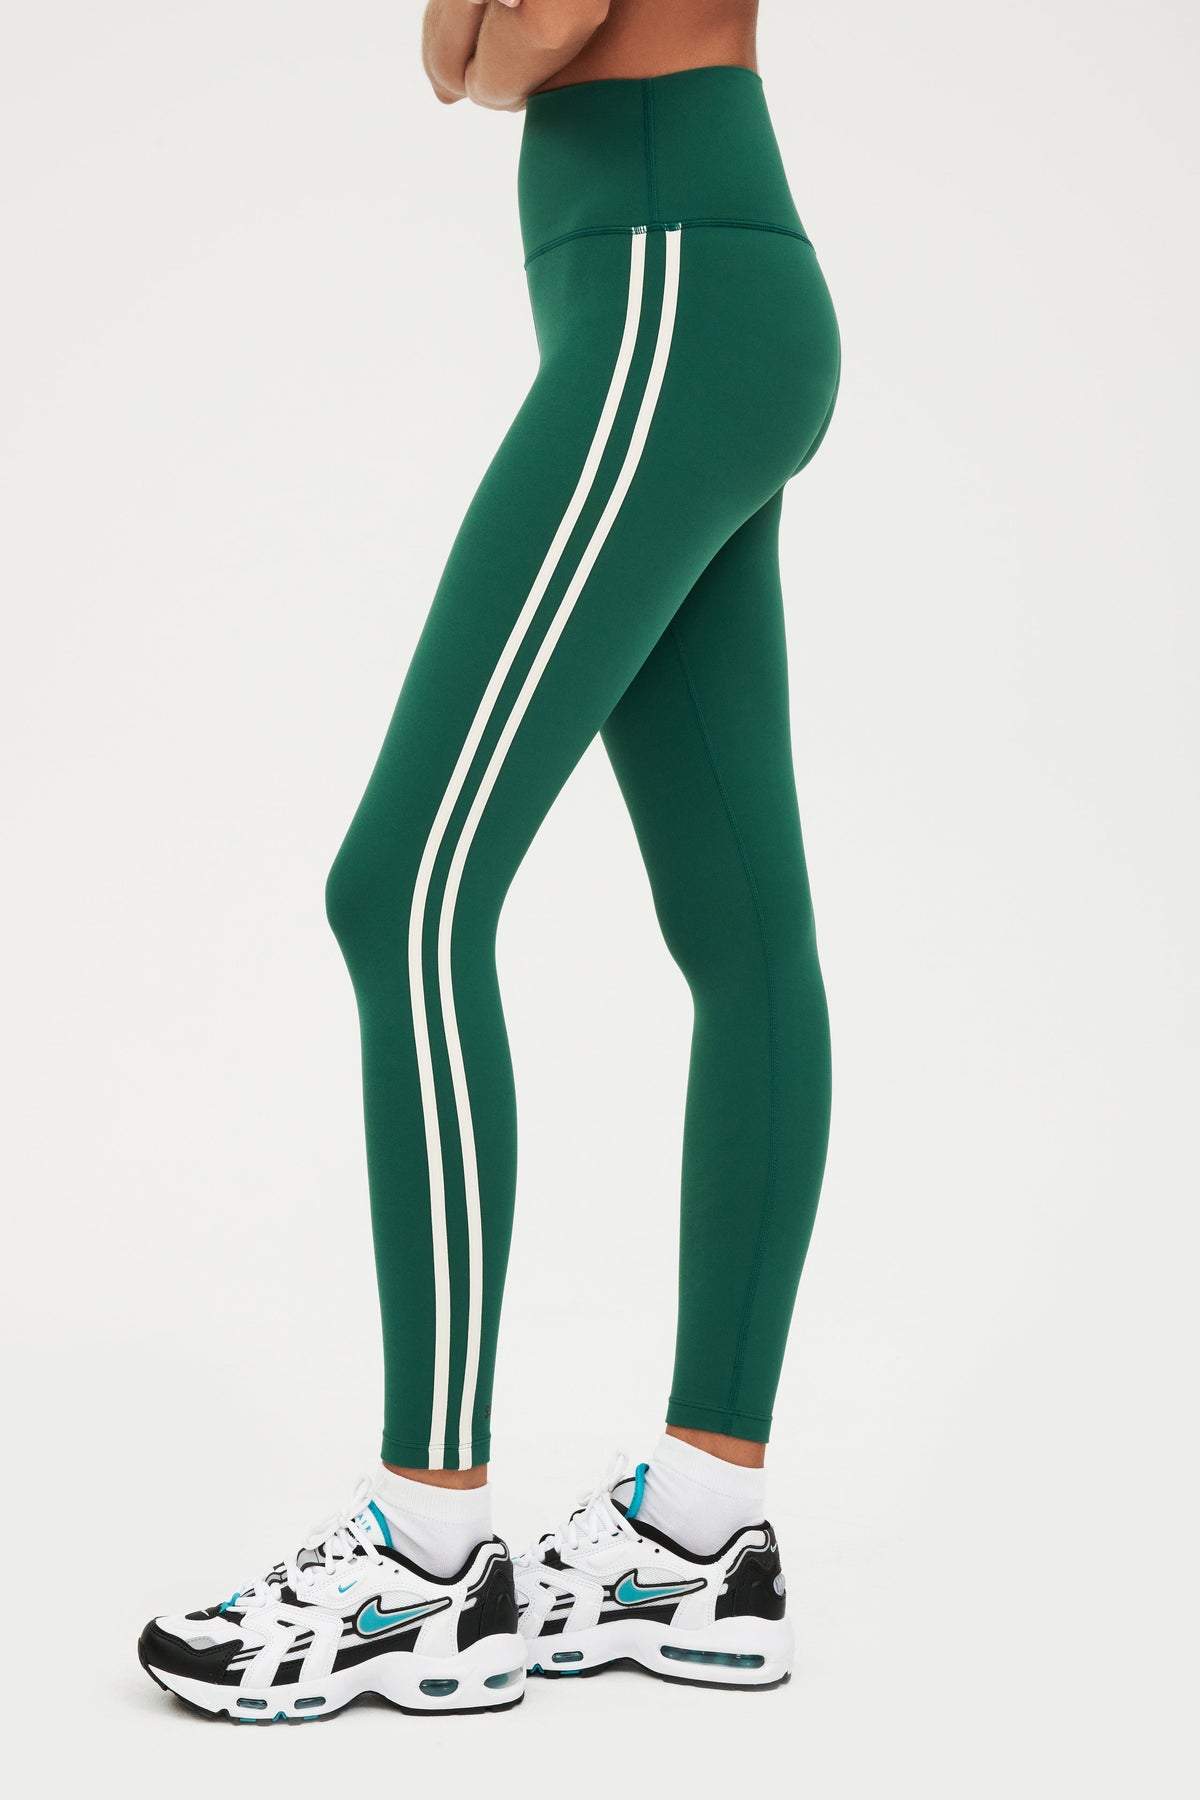 210g Leggings - Emerald Green / M  High waisted leggings, Womens